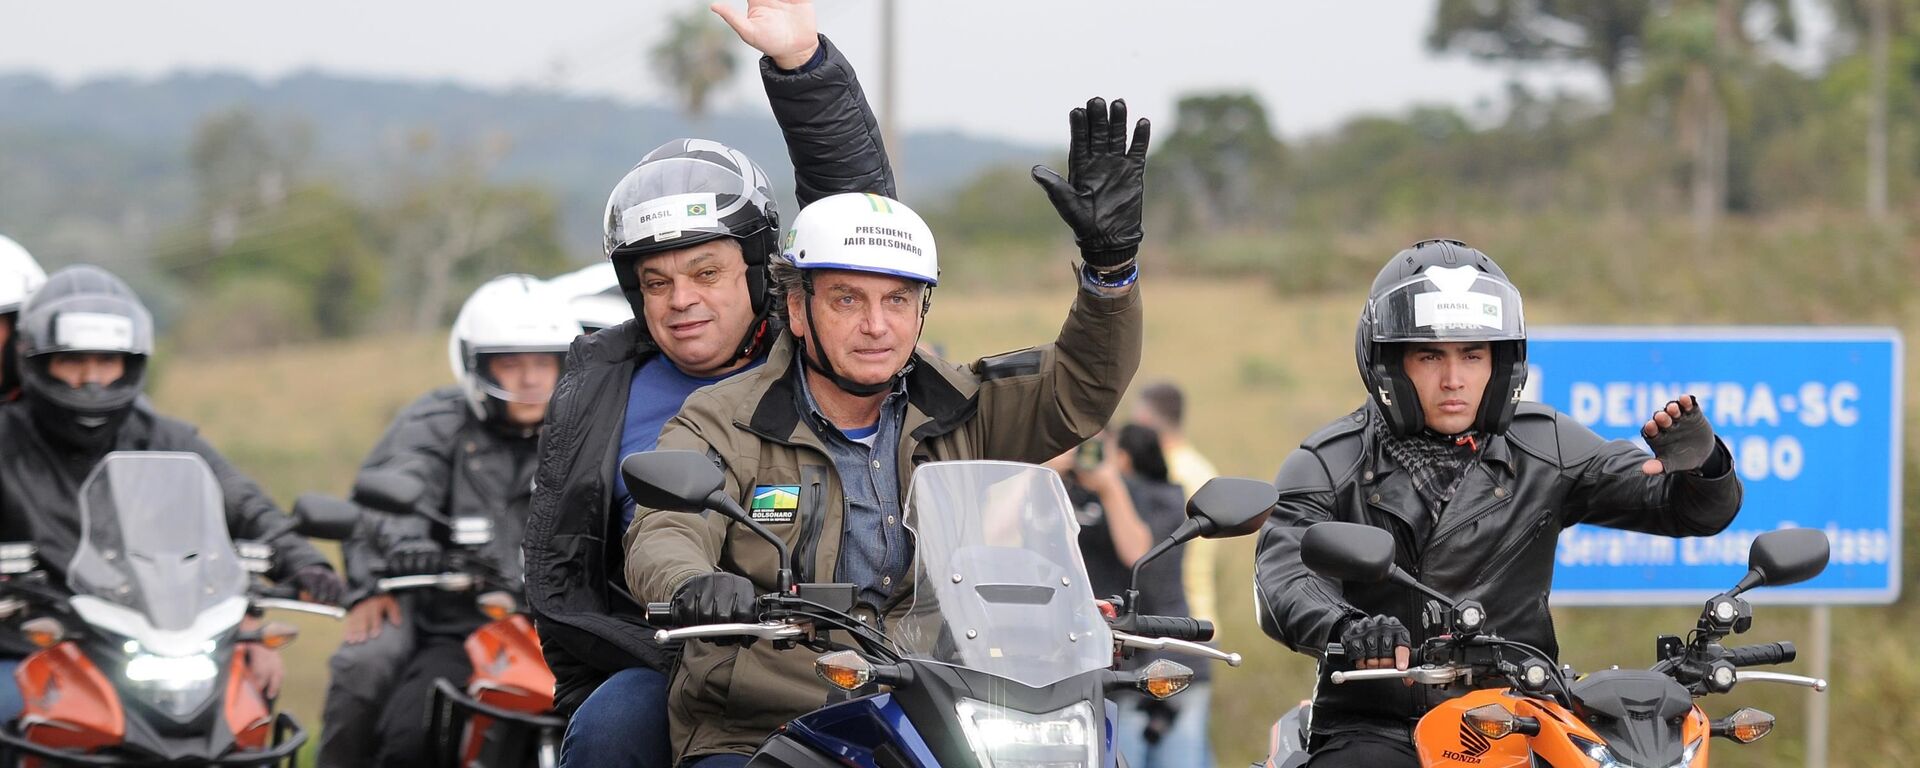 O presidente Jair Bolsonaro e o prefeito de Chapecó João Rodrigues, durante Motociata com apoiadores na cidade de Chapecó, SC, 26 de junho de 2021  - Sputnik Brasil, 1920, 26.12.2021